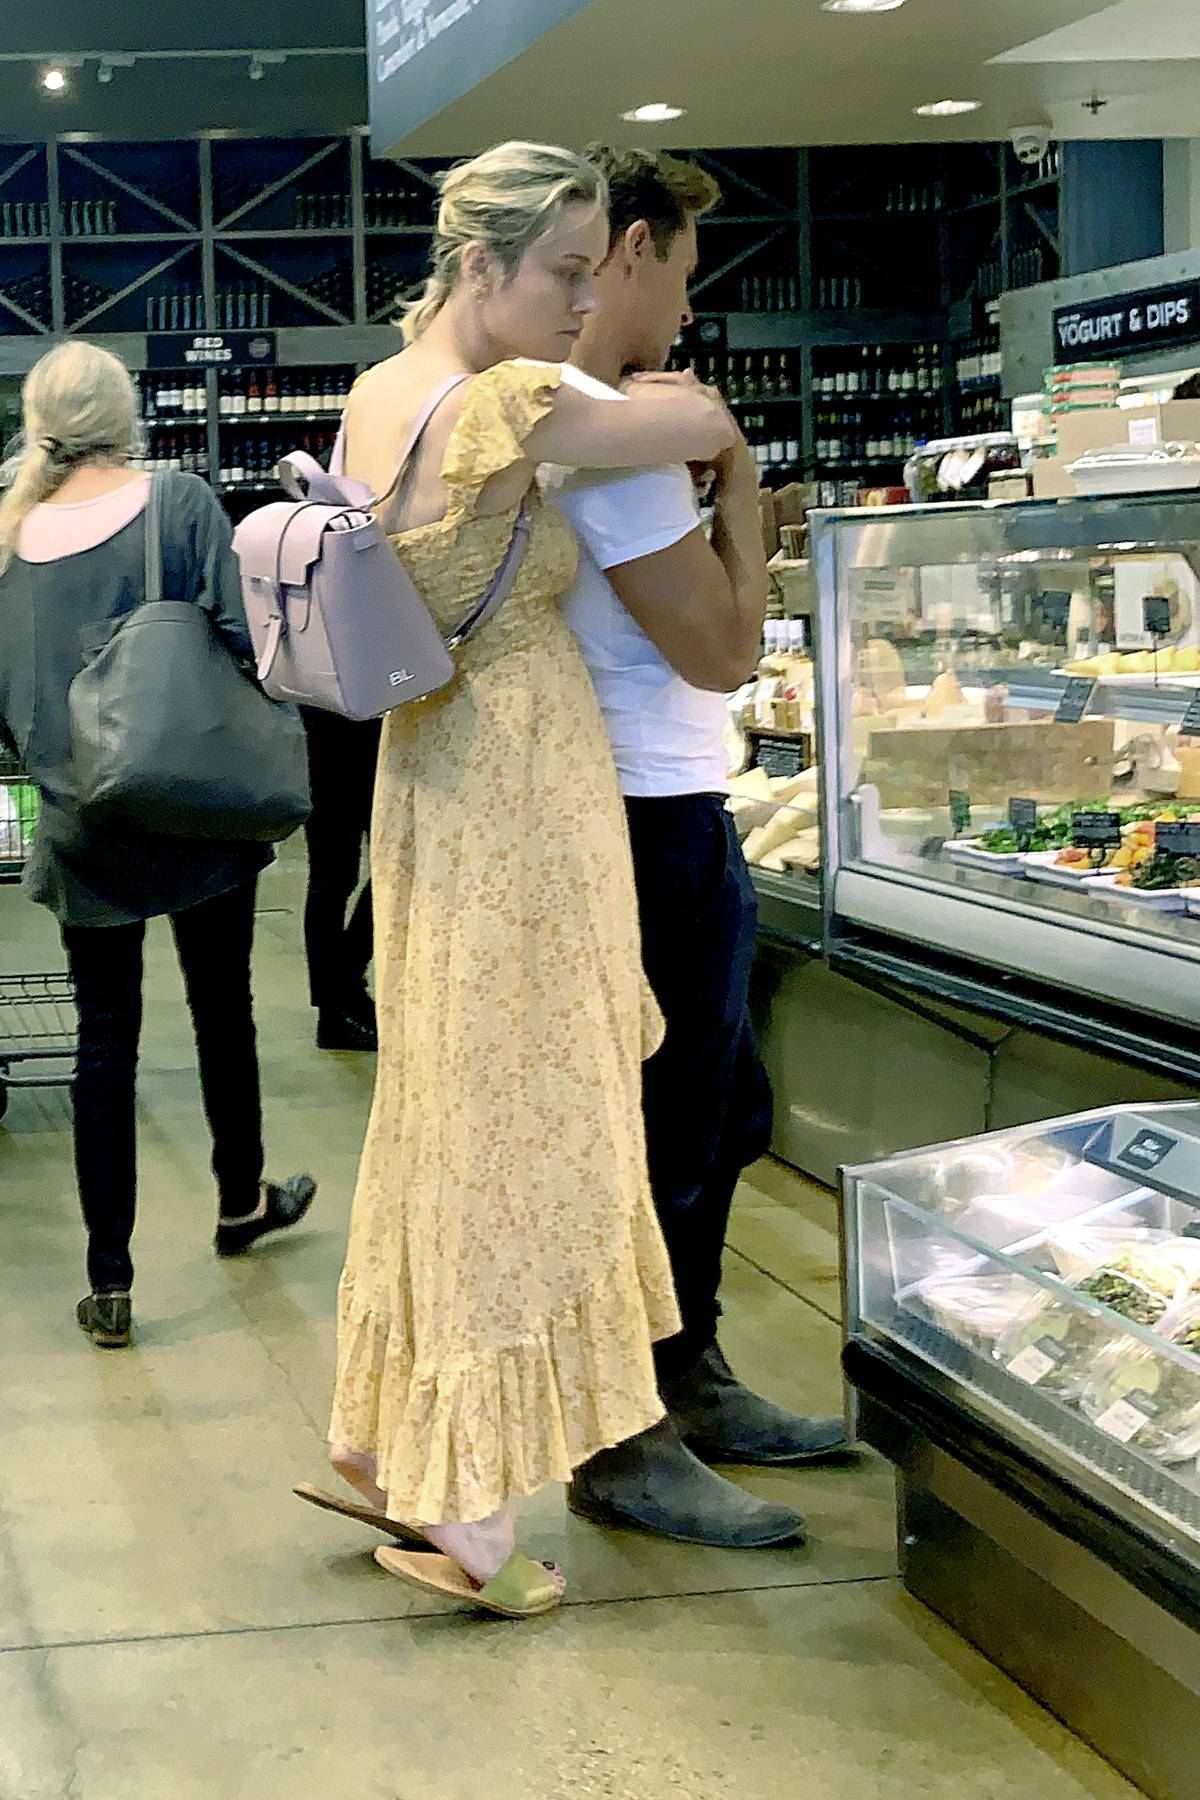 Elijah och Brie håller varandra i handen vid en matbutik